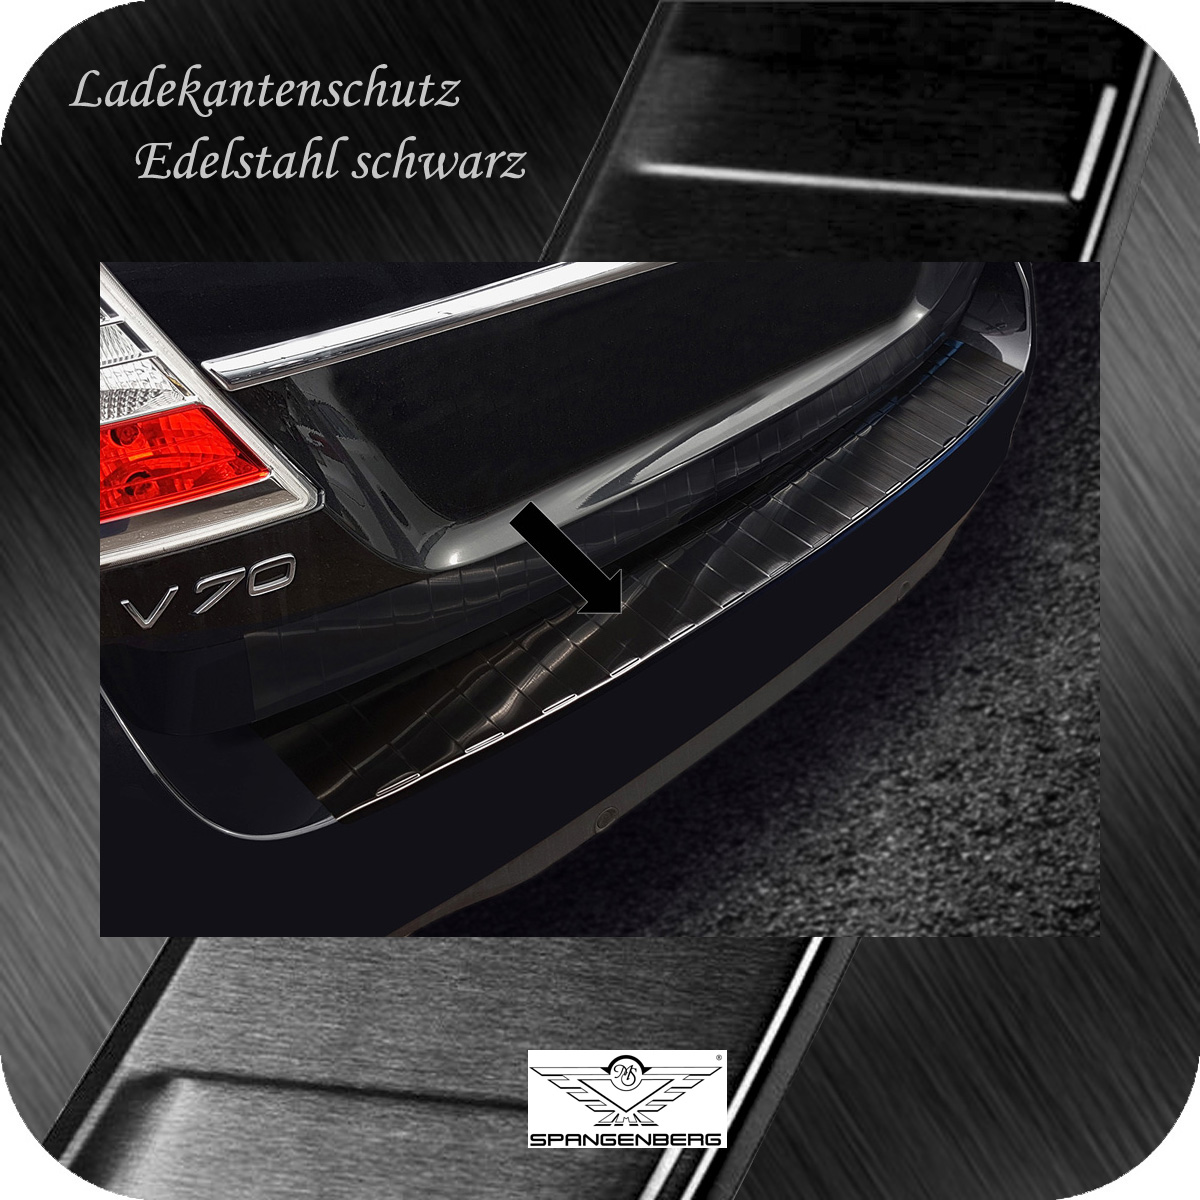 Ladekantenschutz Edelstahl schwarz für Volvo V70 III ab Facelift 6.2013- 3245301